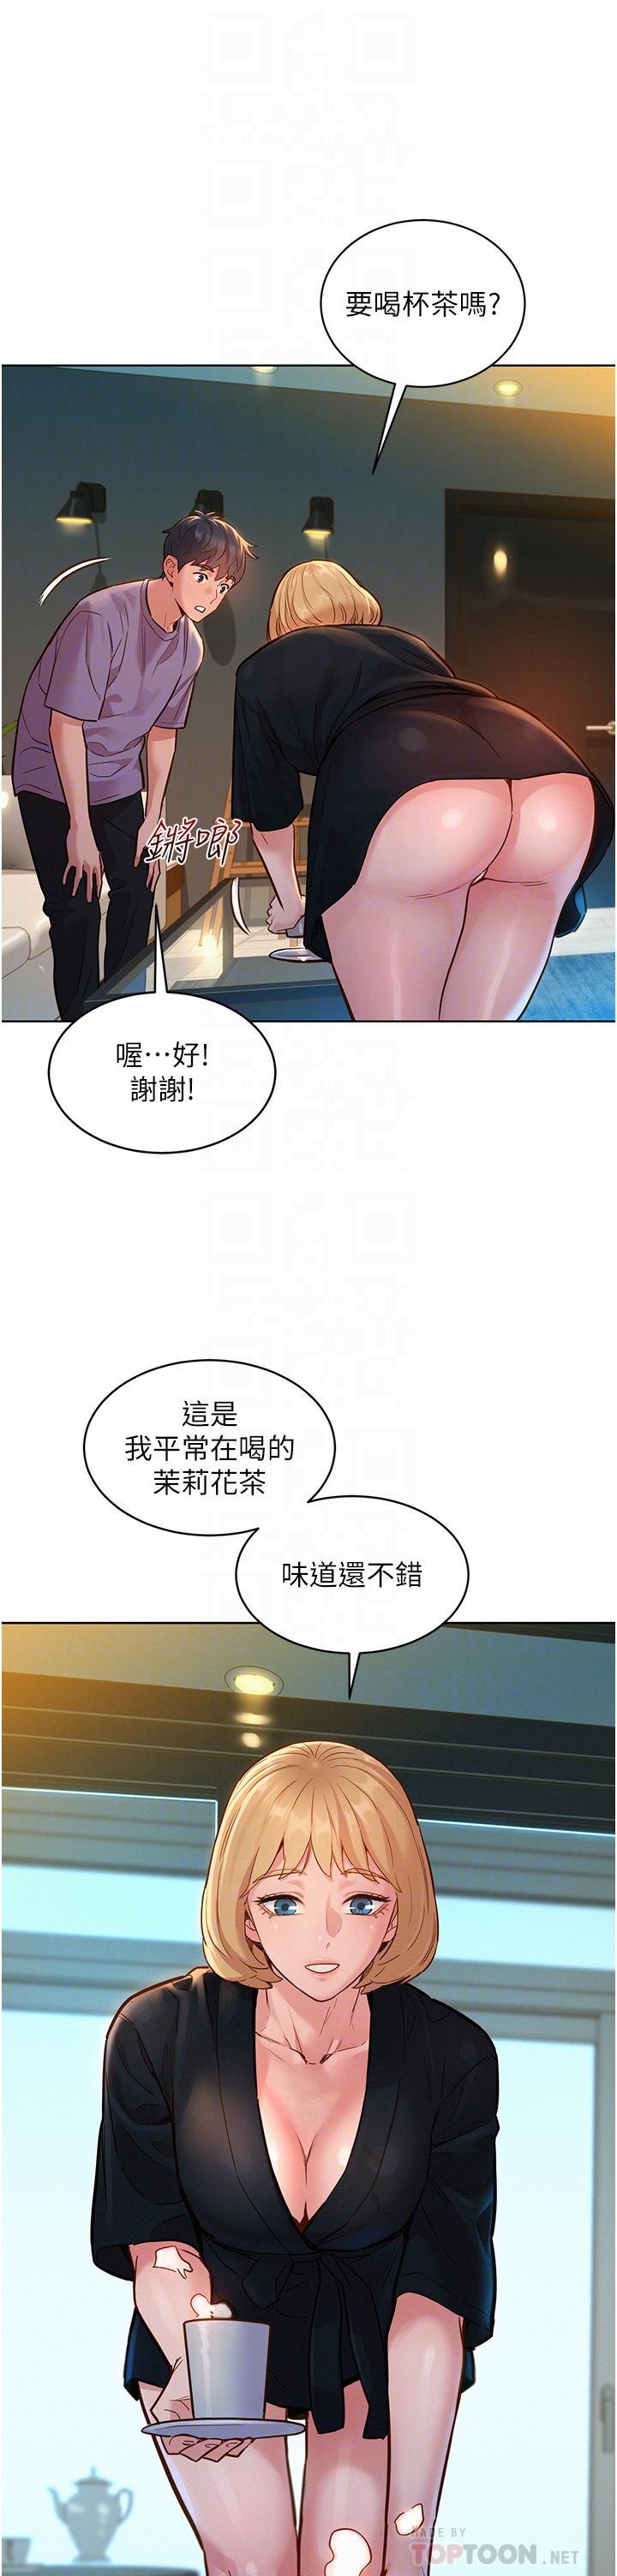 韩国漫画友情万睡韩漫_友情万睡-第17话-裸体模特炽热的双腿间在线免费阅读-韩国漫画-第6张图片